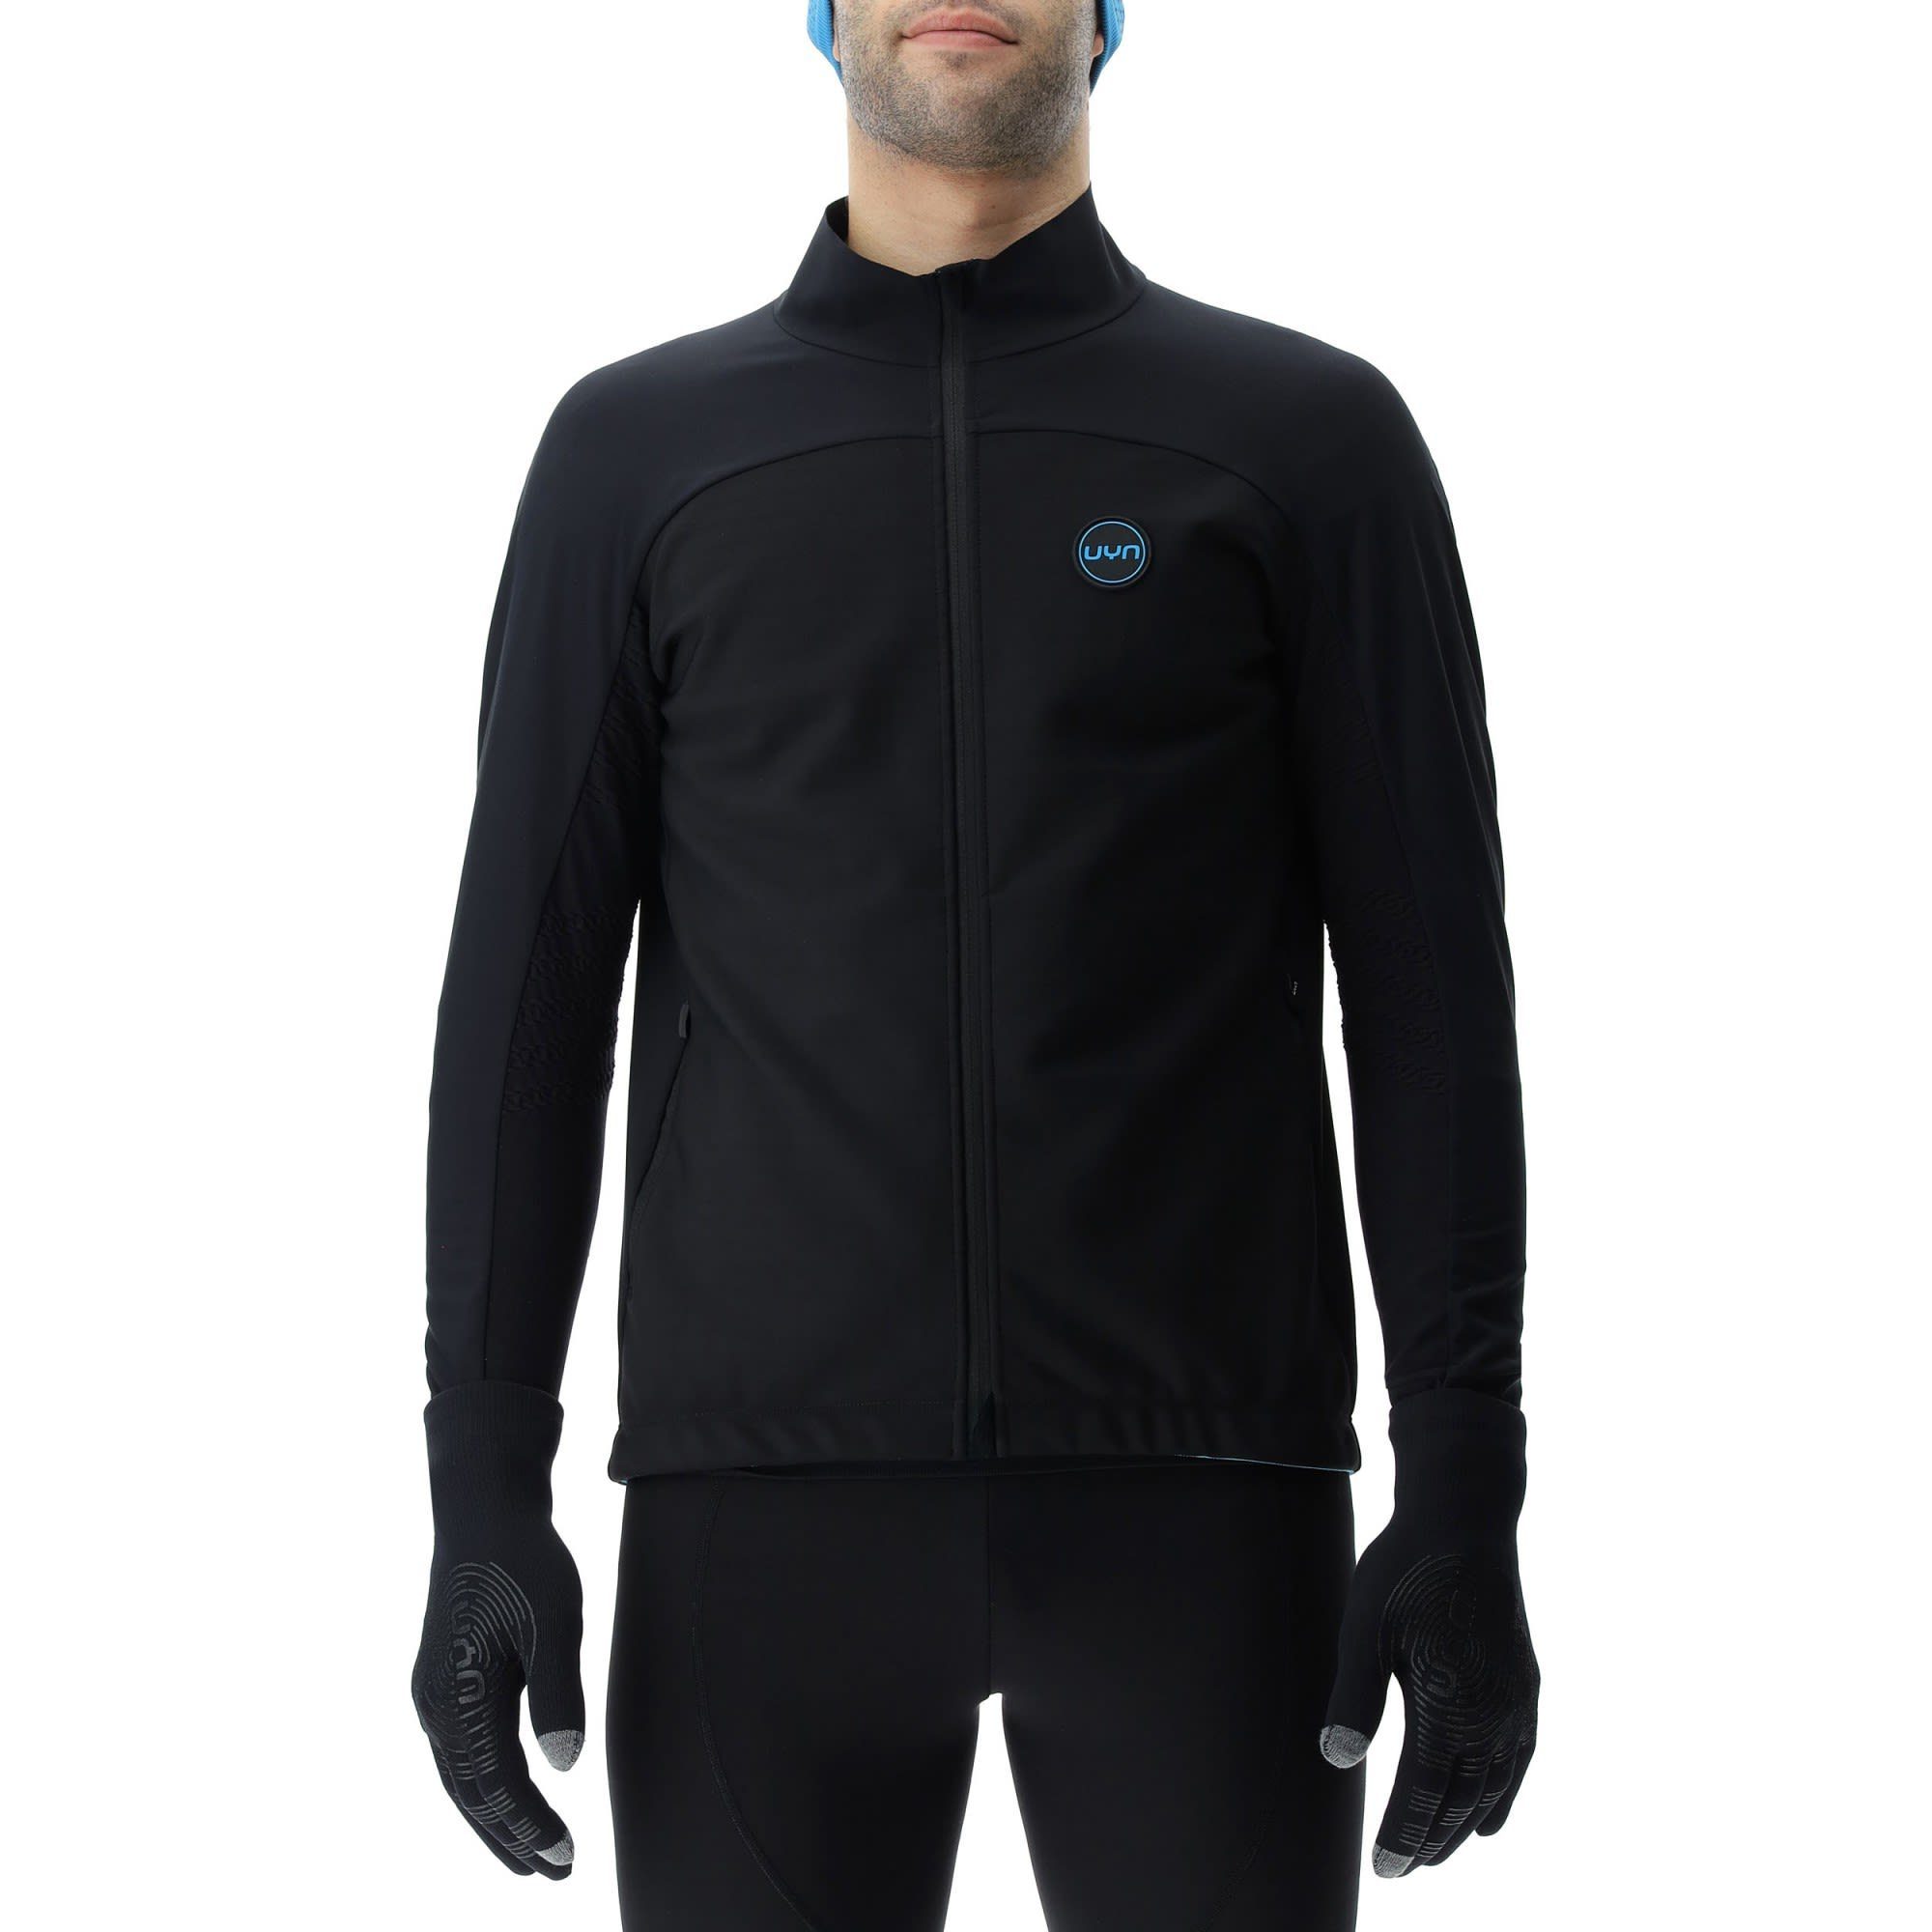 Turquoise - Black Black Uyn Herren M UYN Skiing Country Cross - Coreshell Anorak Jacket